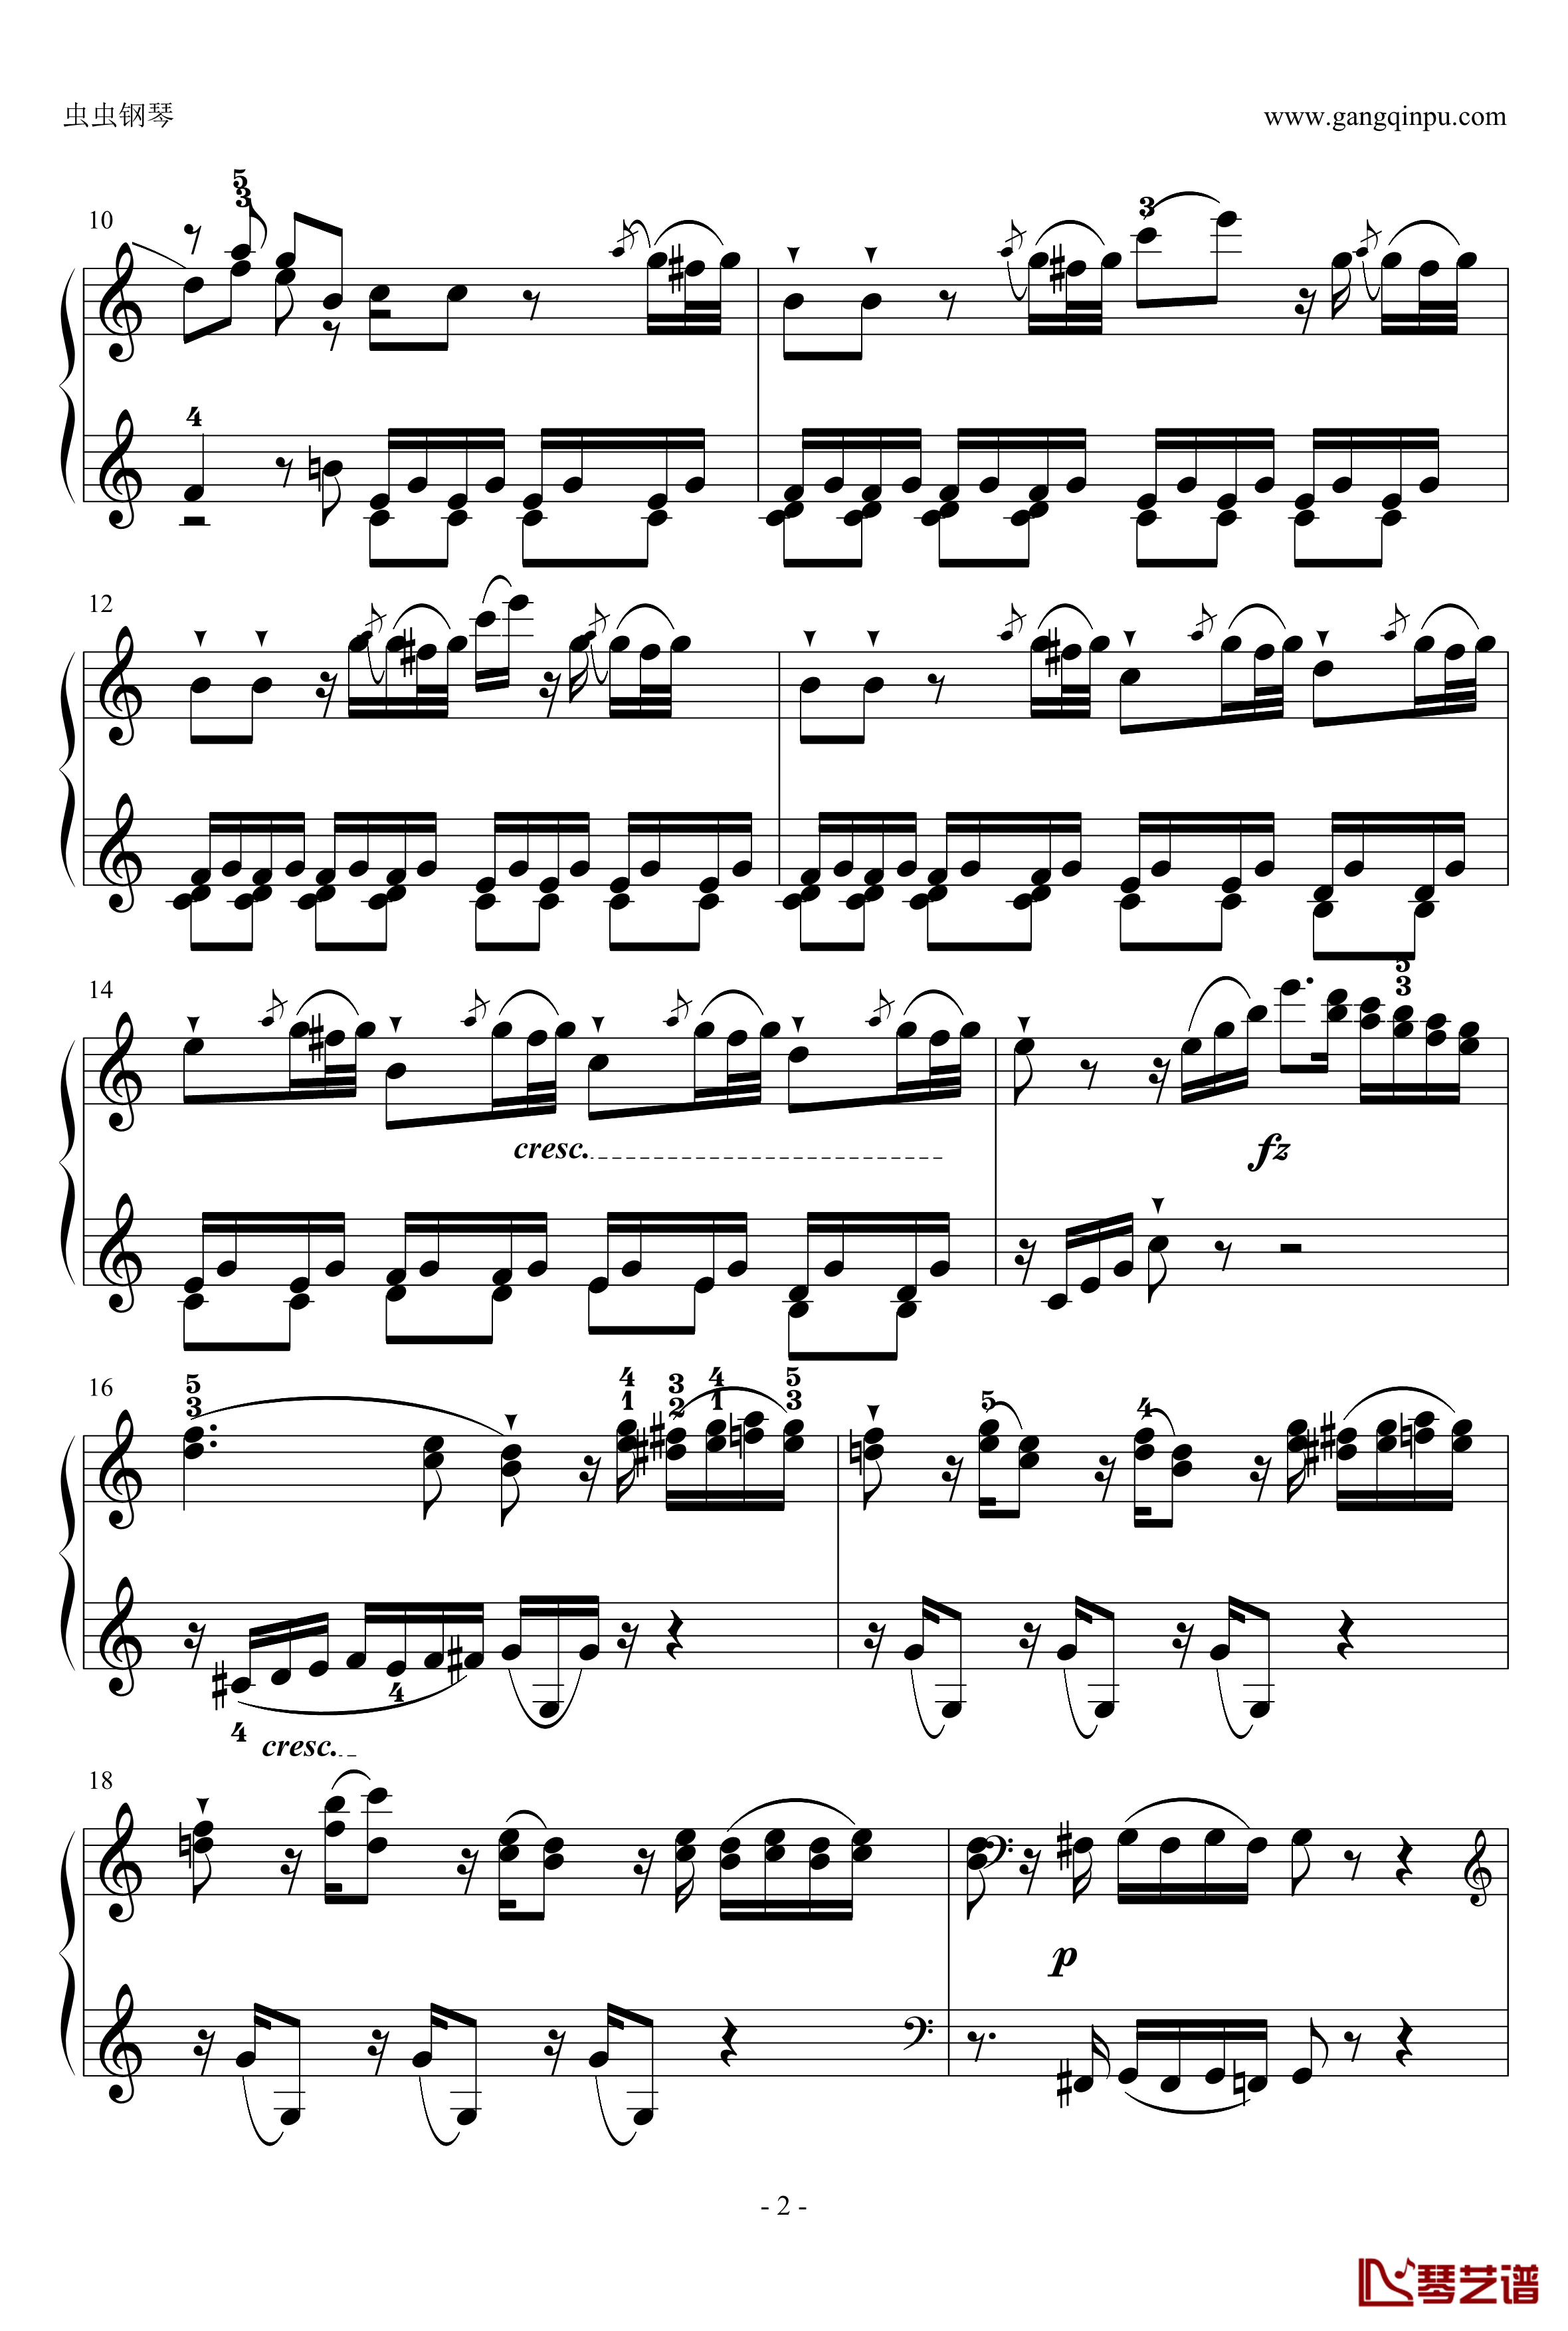 C大调奏鸣曲钢琴谱第一乐章-海顿2